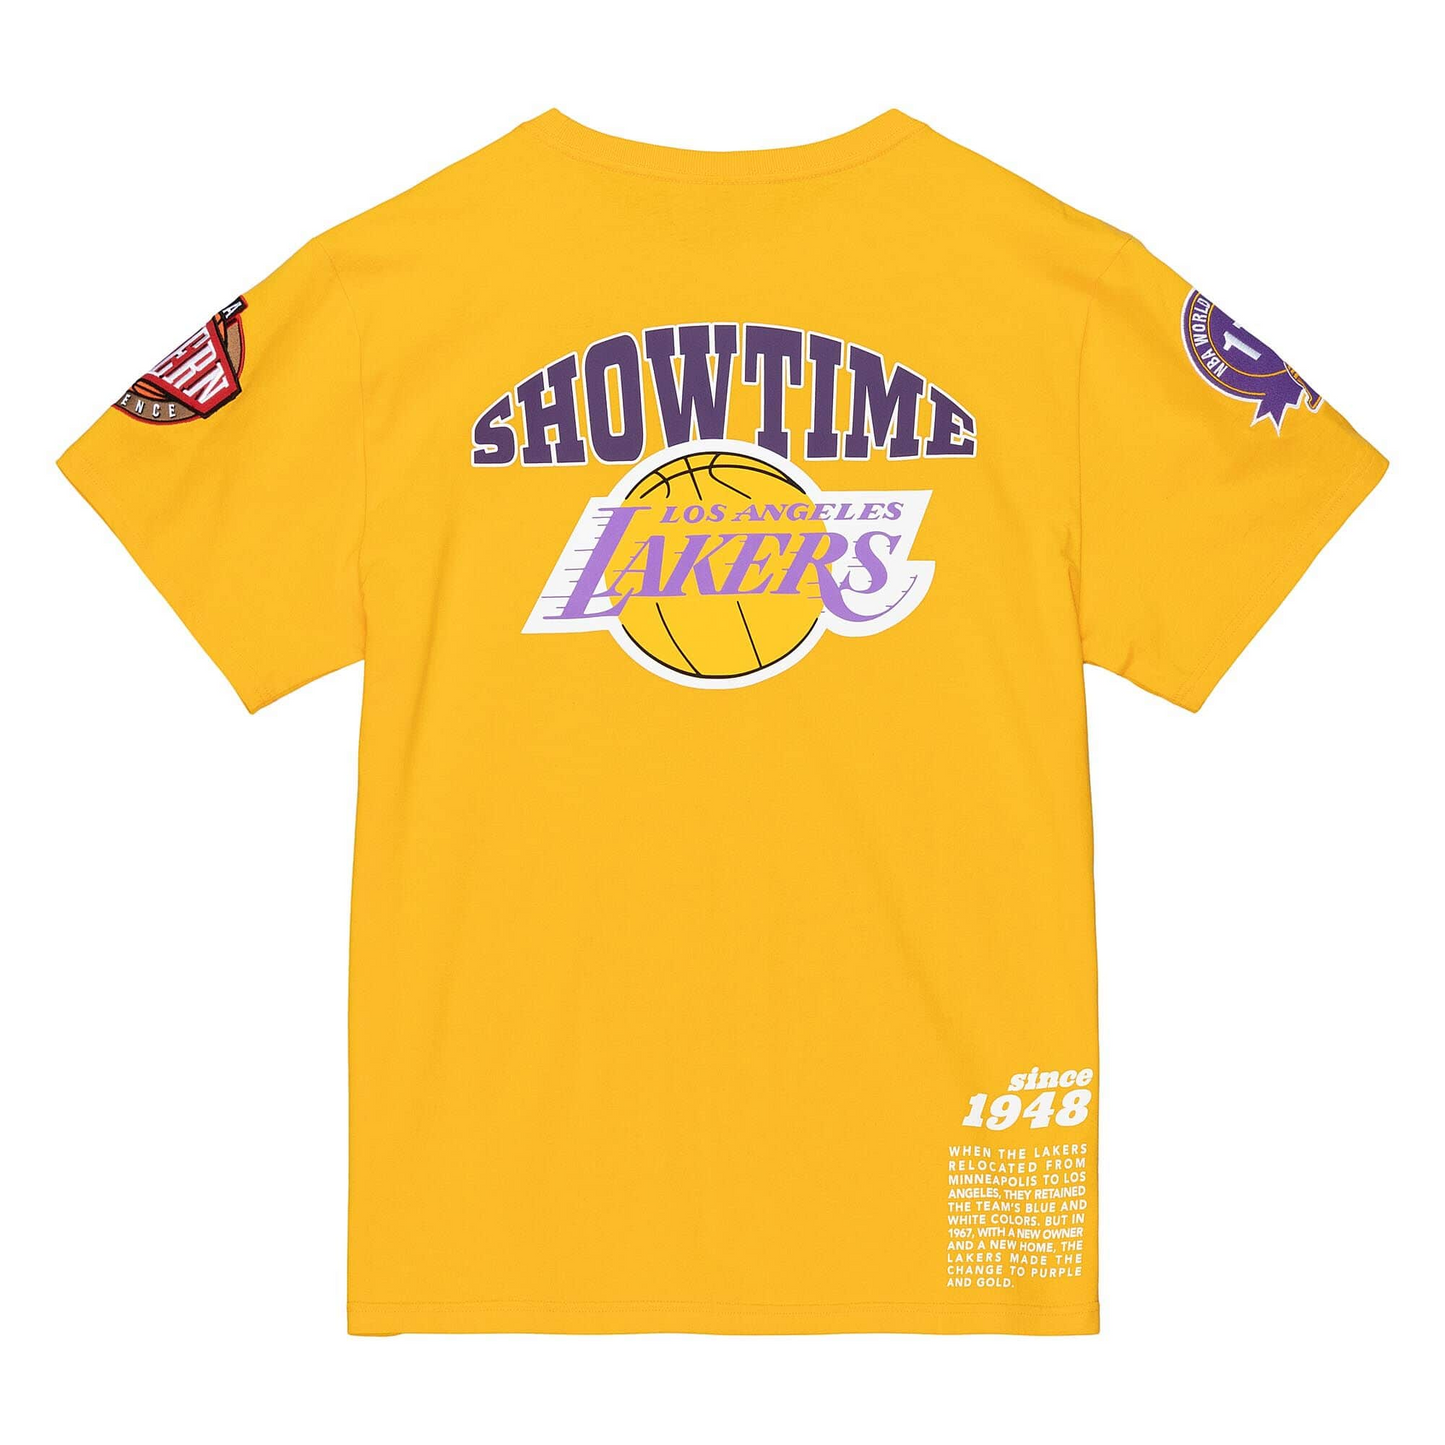 Los Angeles Lakers Mens T-Shirts, Mens Lakers Shirts